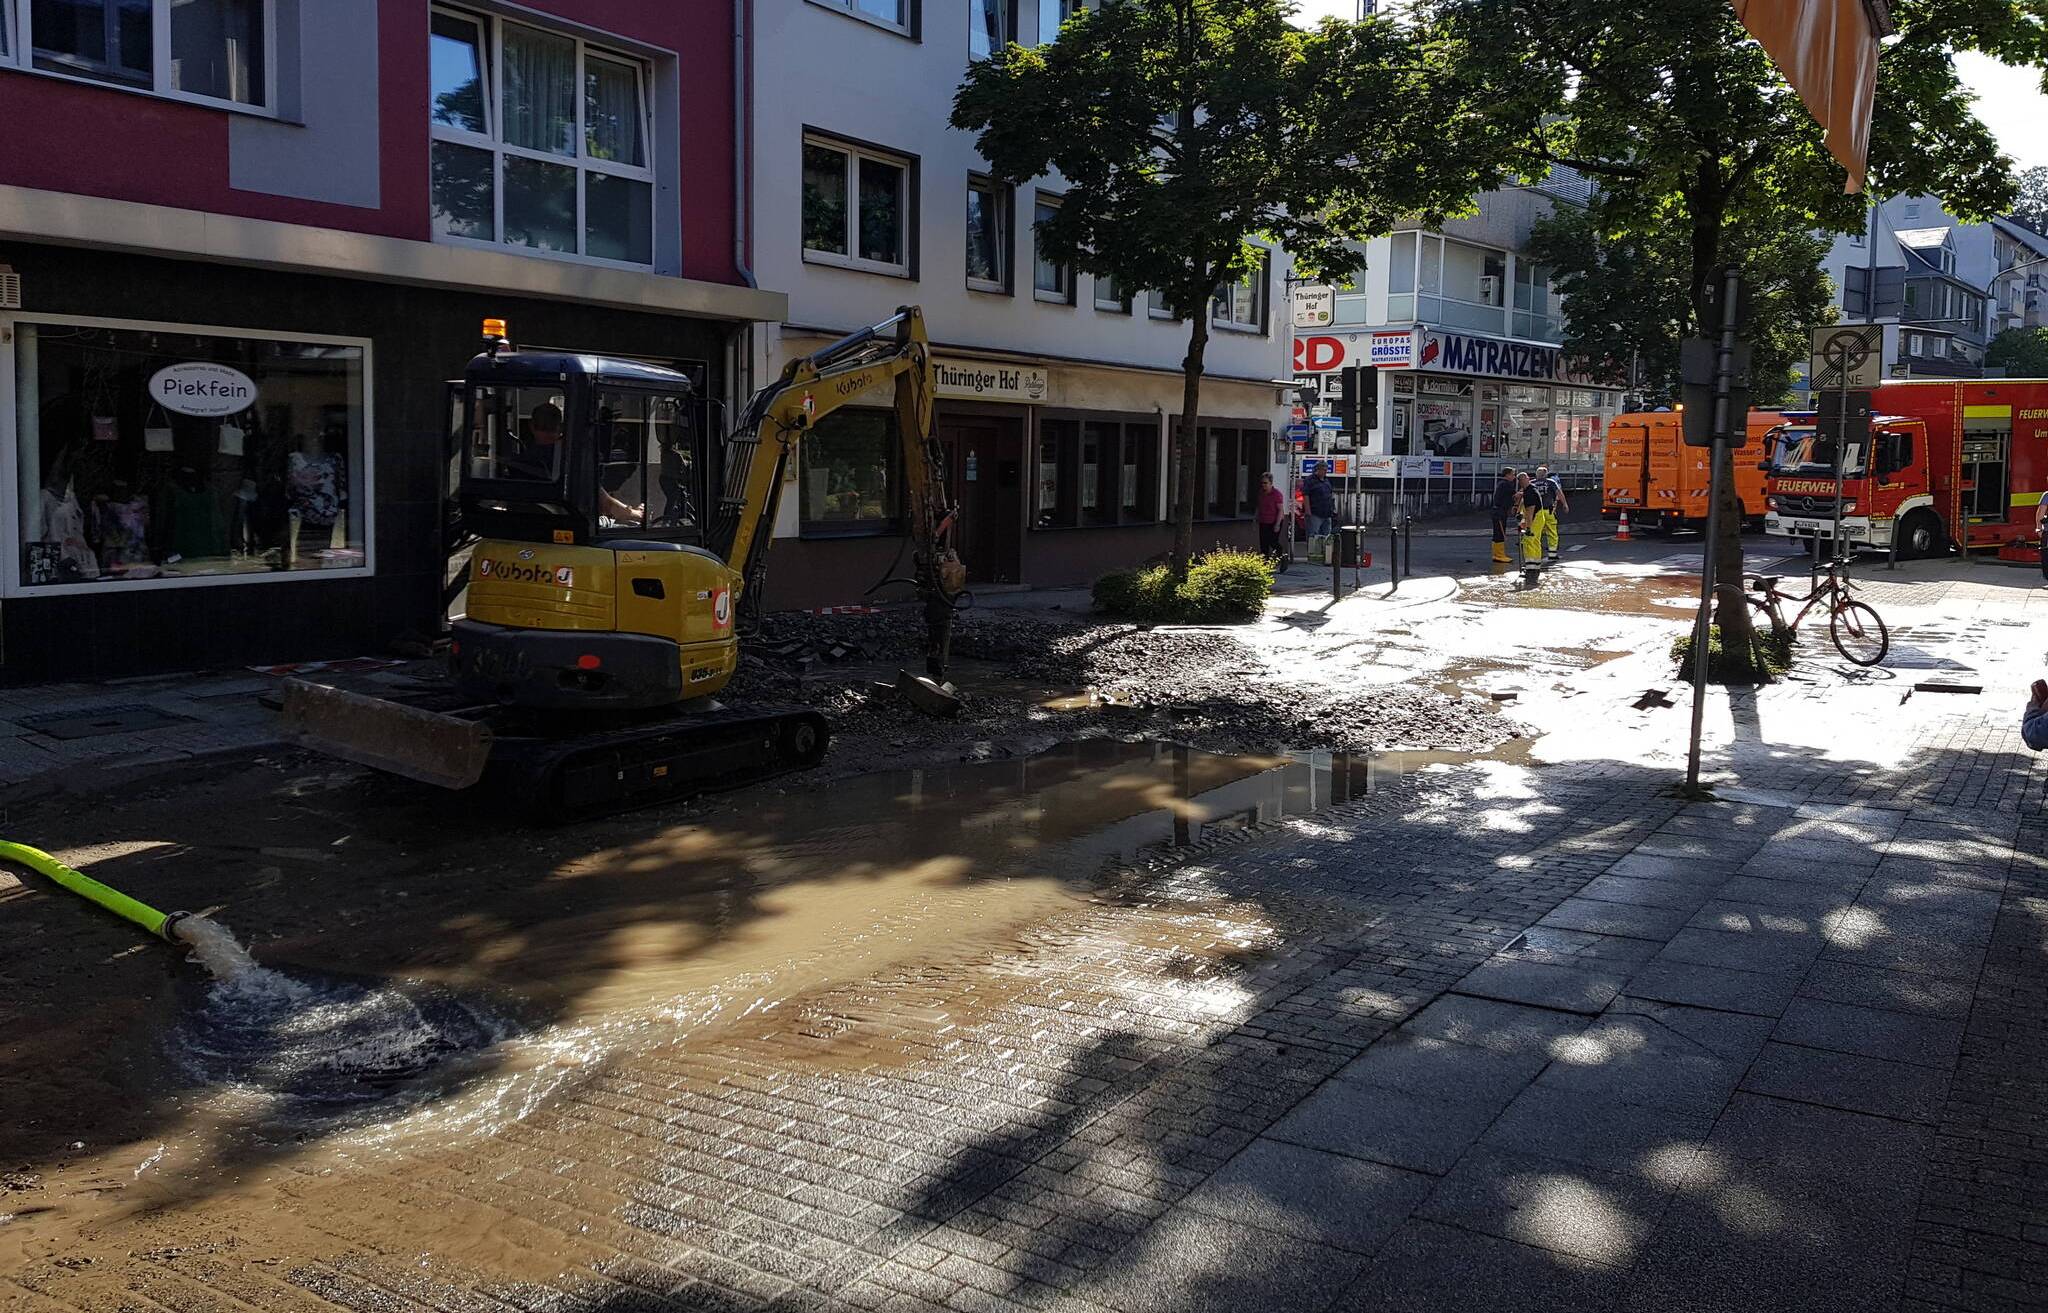  Die Ronsdorfer Innenstadt war für einige Zeit überflutet. Die Aufräumarbeiten dauern an.  